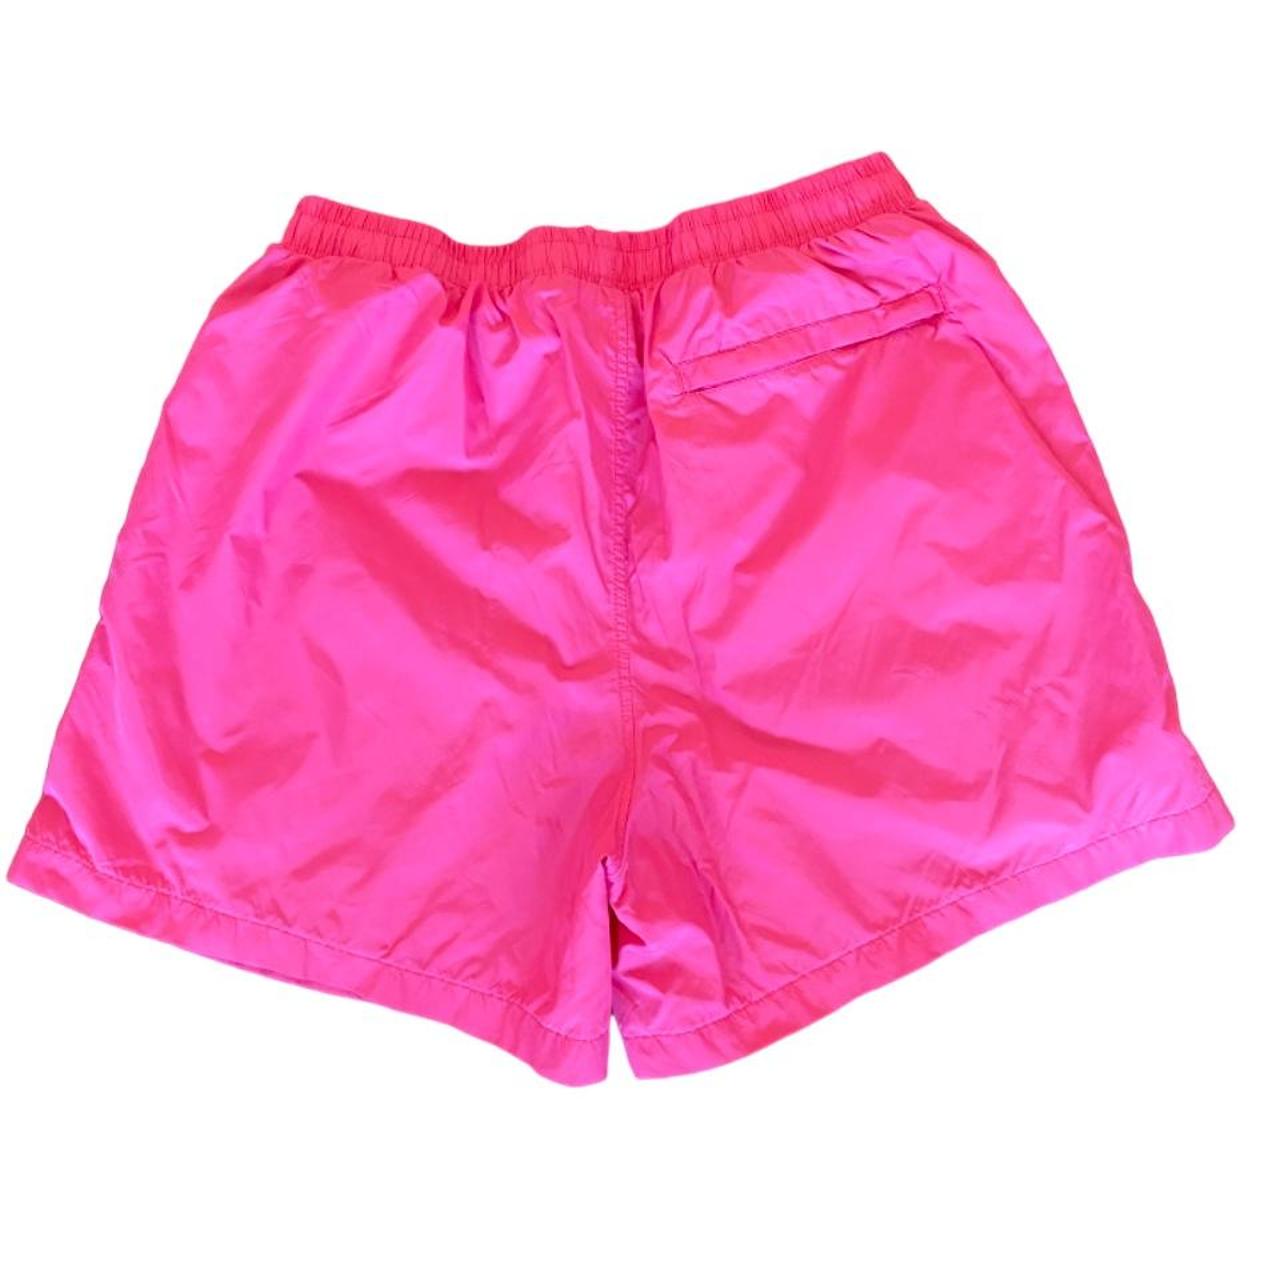 Sergio Tacchini Men's Pink Swim-briefs-shorts (2)